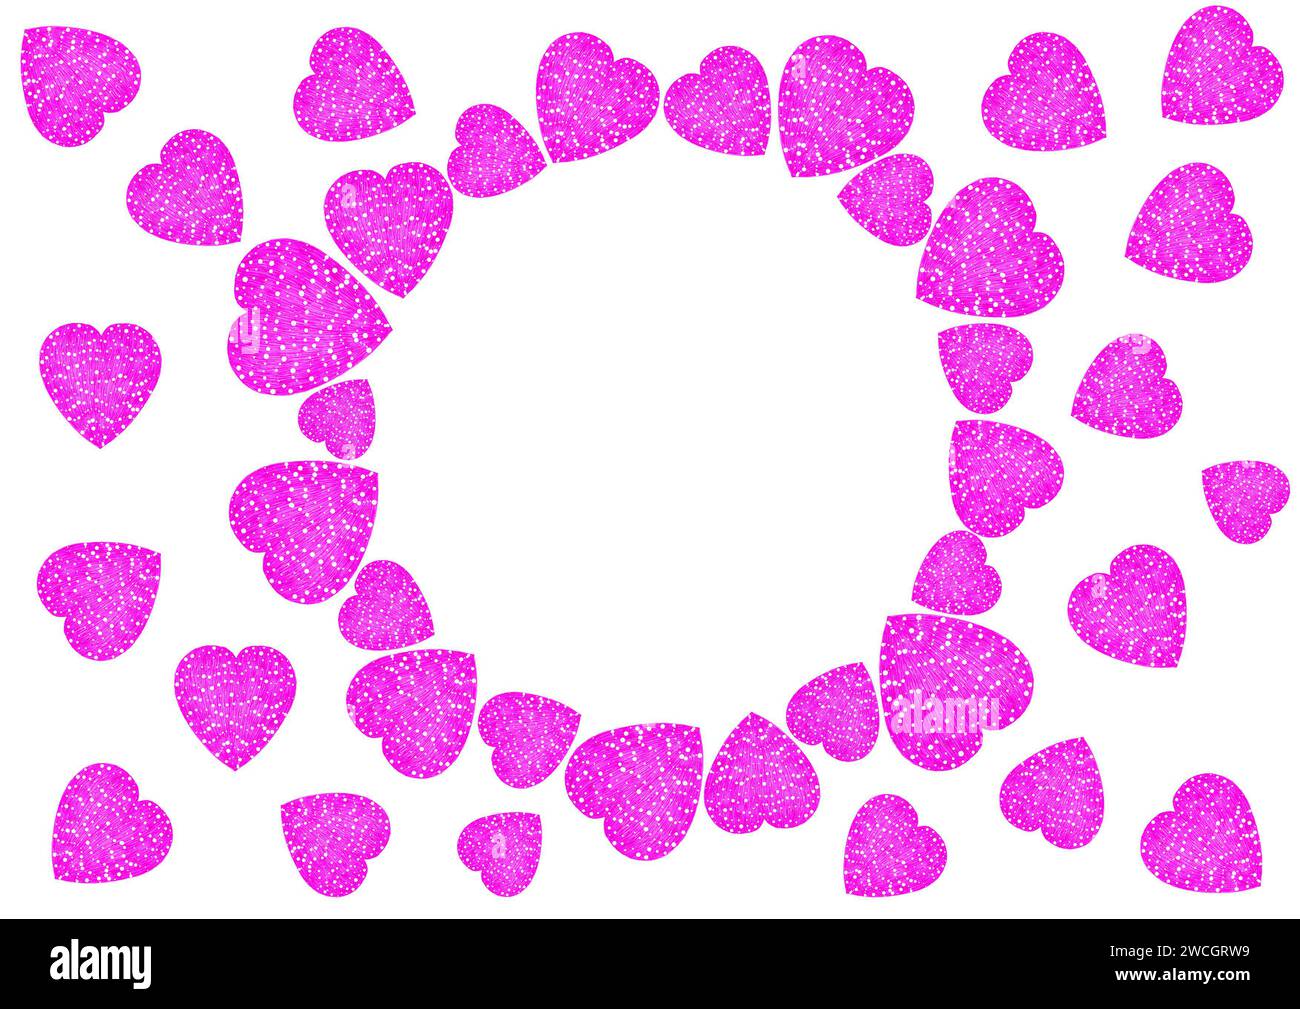 Runder Rahmen aus rosa Herzen. Herzen unterschiedlicher Größe, gefüllt mit Strichen und weißen Punkten. Kreis bilden. Die Herzen werden auch um den Rahmen gelegt. Weißer Kopierbereich. Postkarte, Einladung, Valentinstag Stockfoto